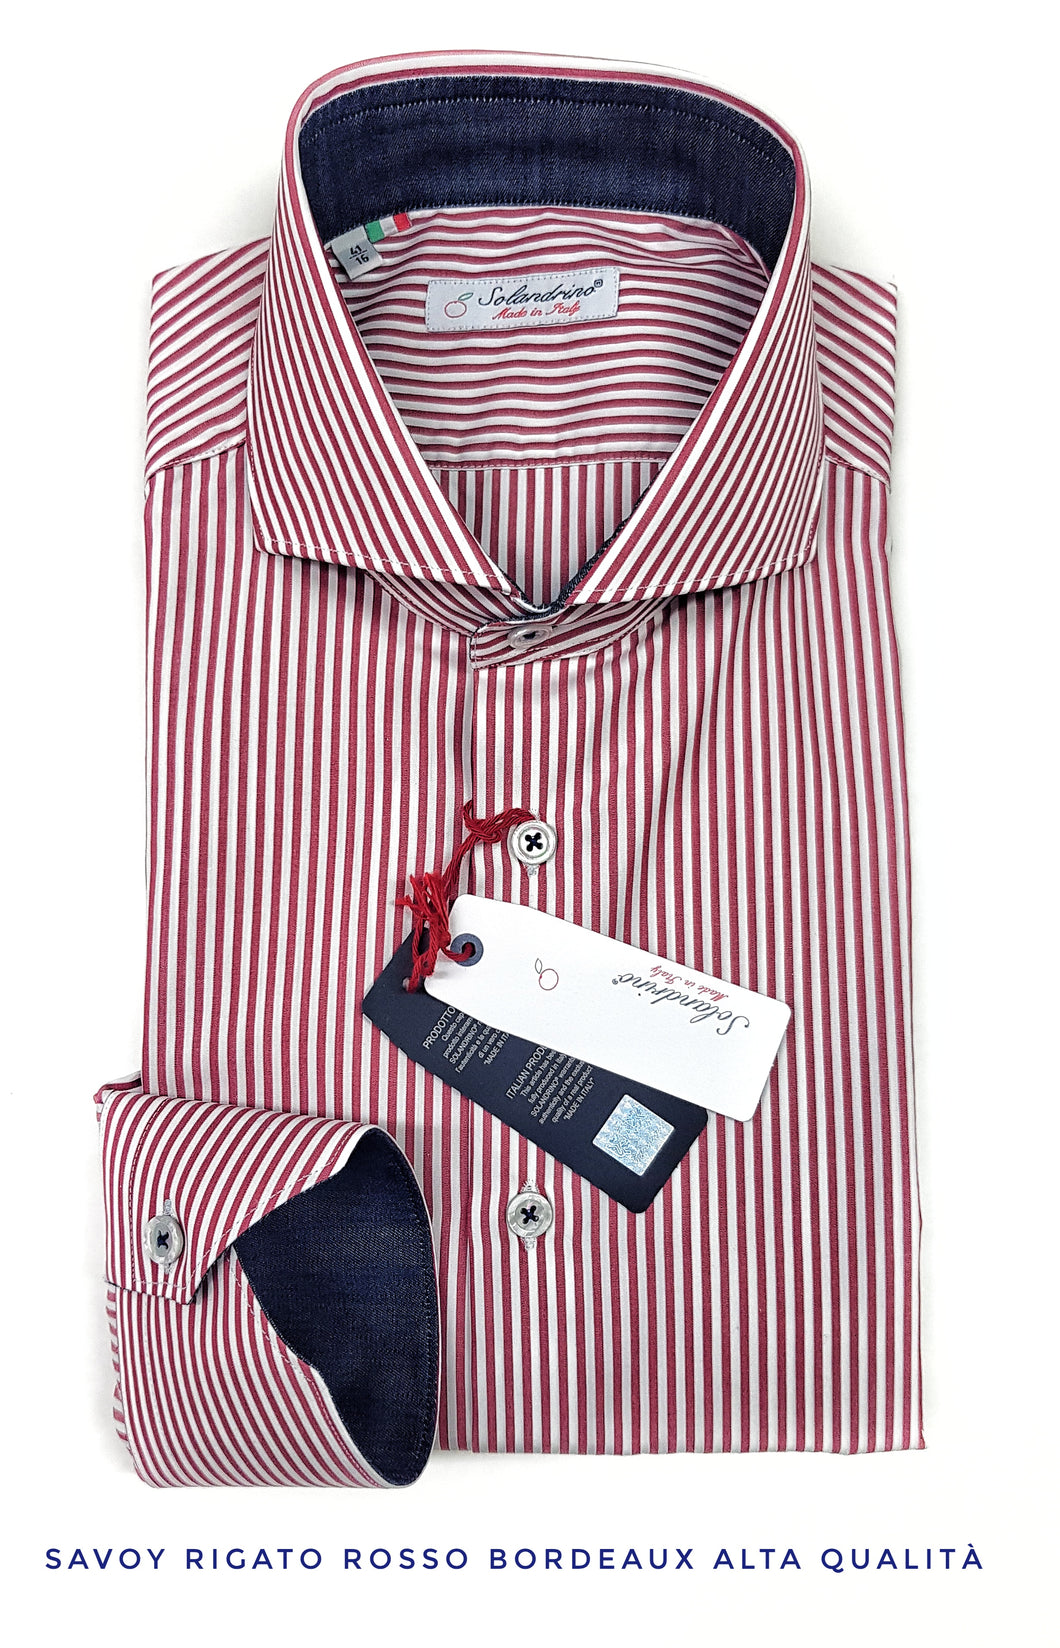 Camicia Uomo puro cotone a righe rosso bordeaux alta qualità bacchettino rigato titolo 120 made in italy